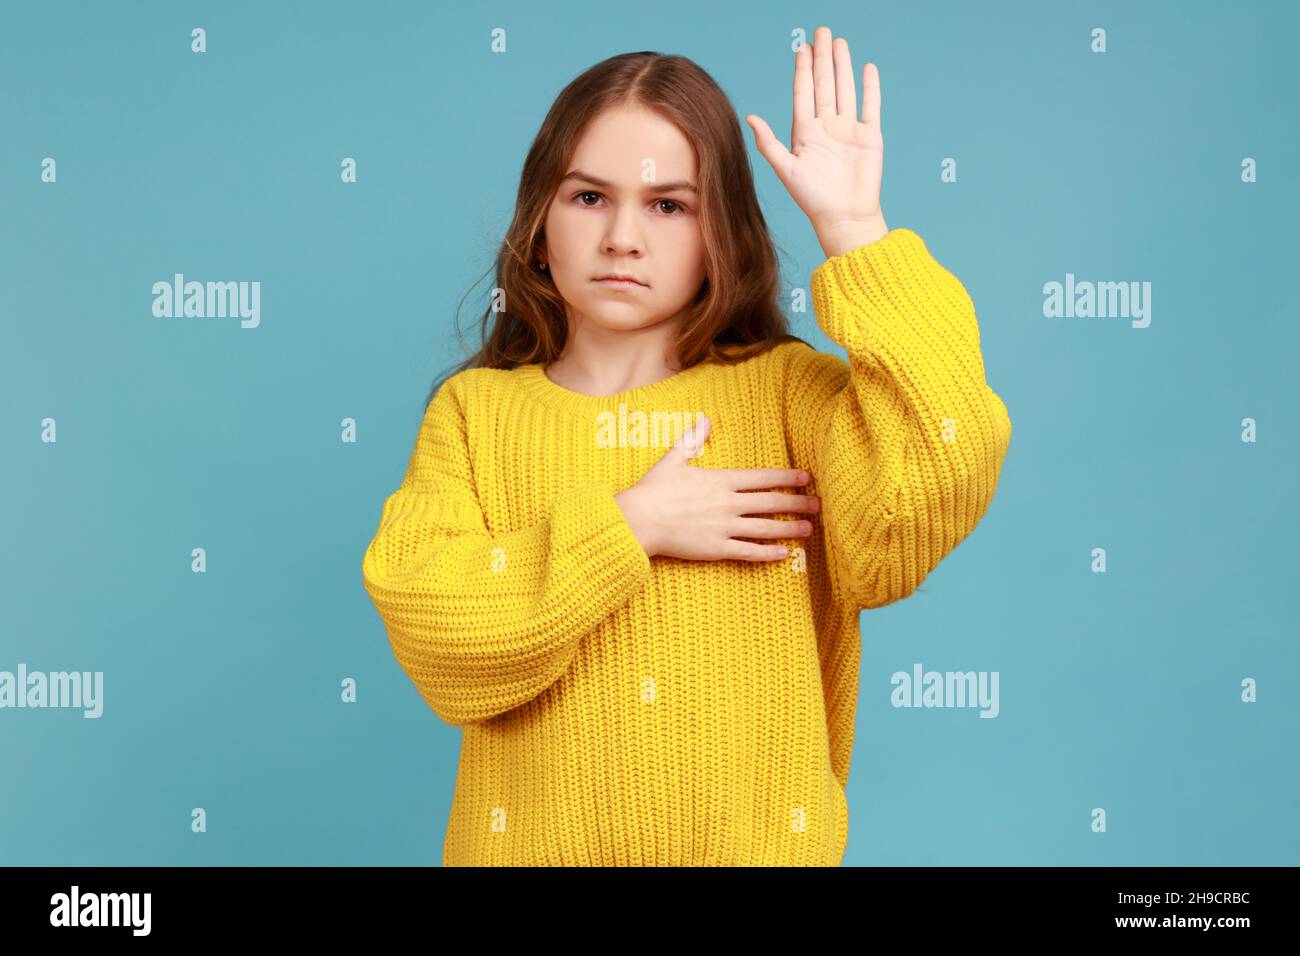 Porträt eines ernsthaften kleinen Mädchens, das zum Eid die Handfläche hebt, und eines Kindes, das sich beschworen hat, nur die Wahrheit zu sagen, und einen gelben Pullover im lässigen Stil trägt. Innenaufnahme des Studios isoliert auf blauem Hintergrund. Stockfoto